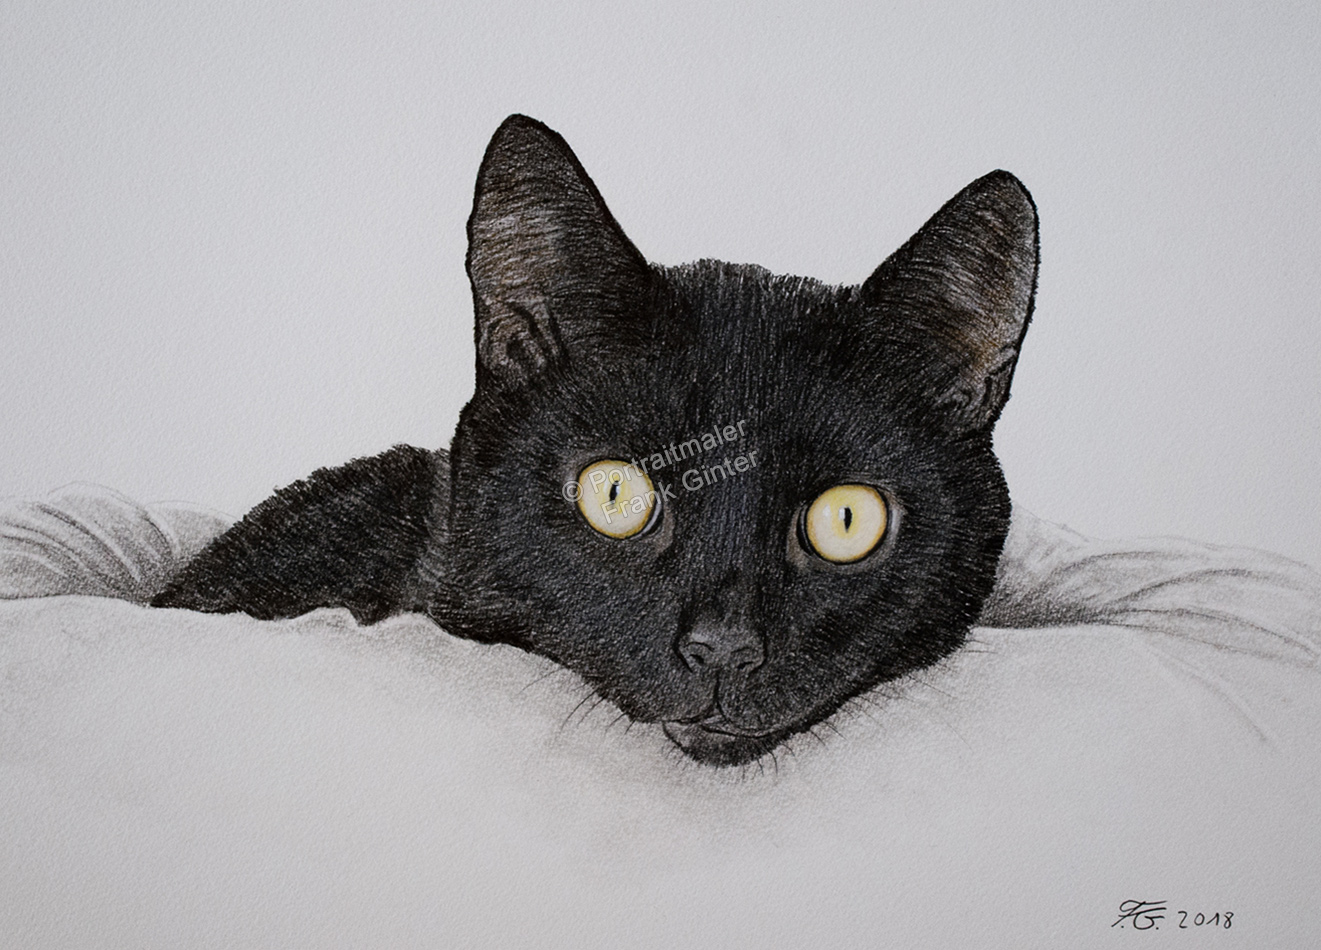 Farbstiftzeichnung eines Katzenportraits, mit Farbstift fotorealistisch gezeichnet